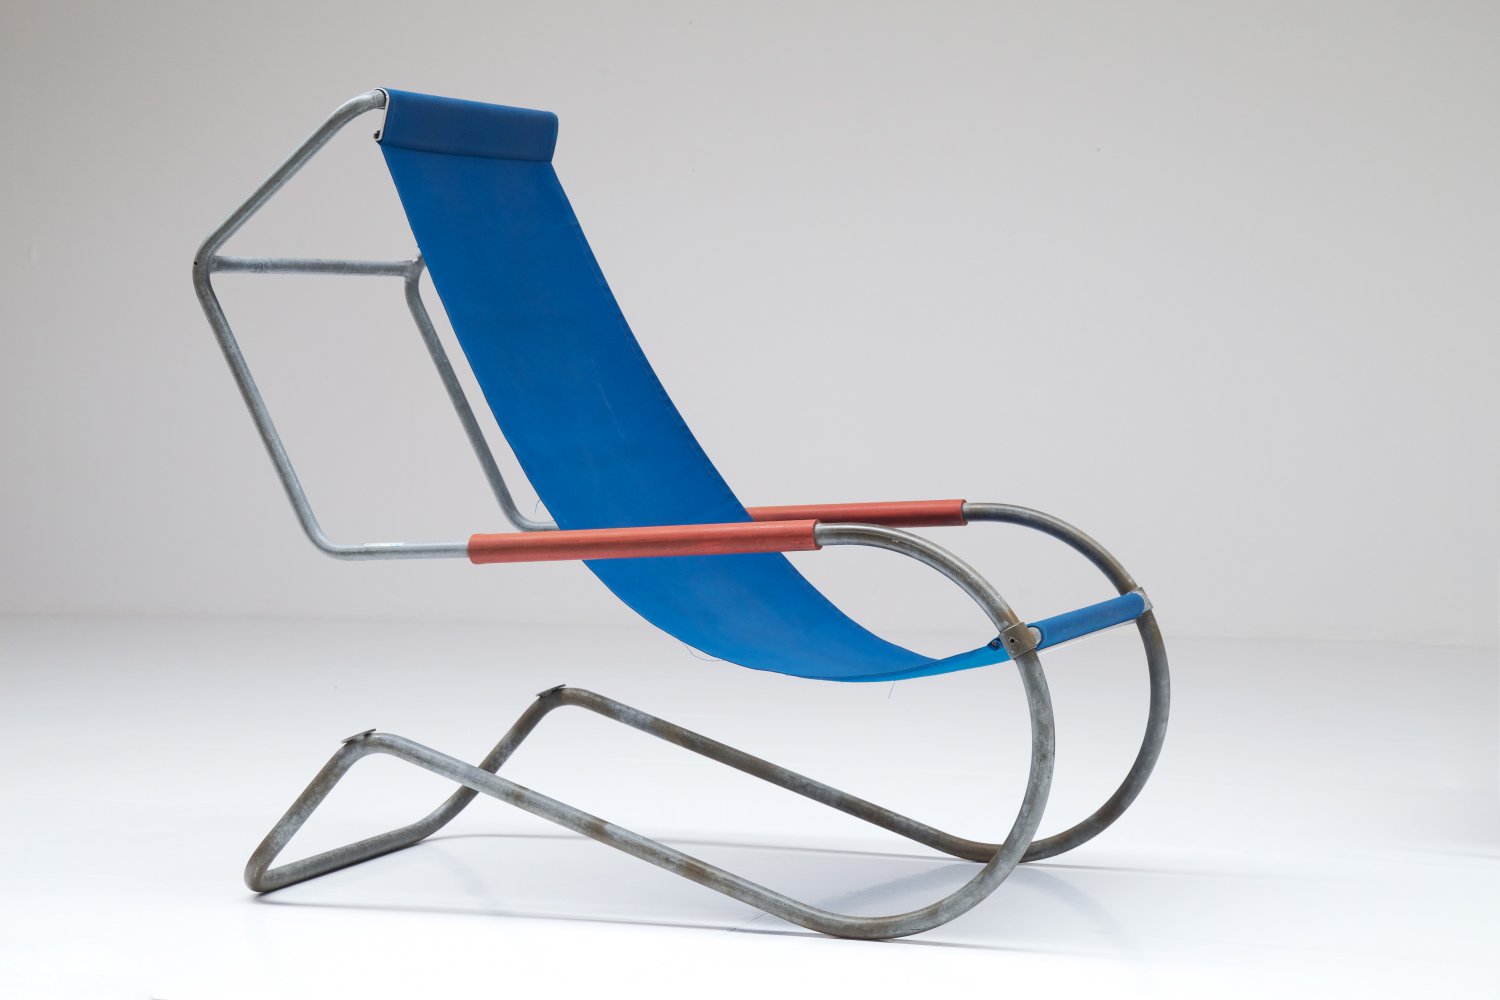 Lido lounge chairs by Fratelli Giudici